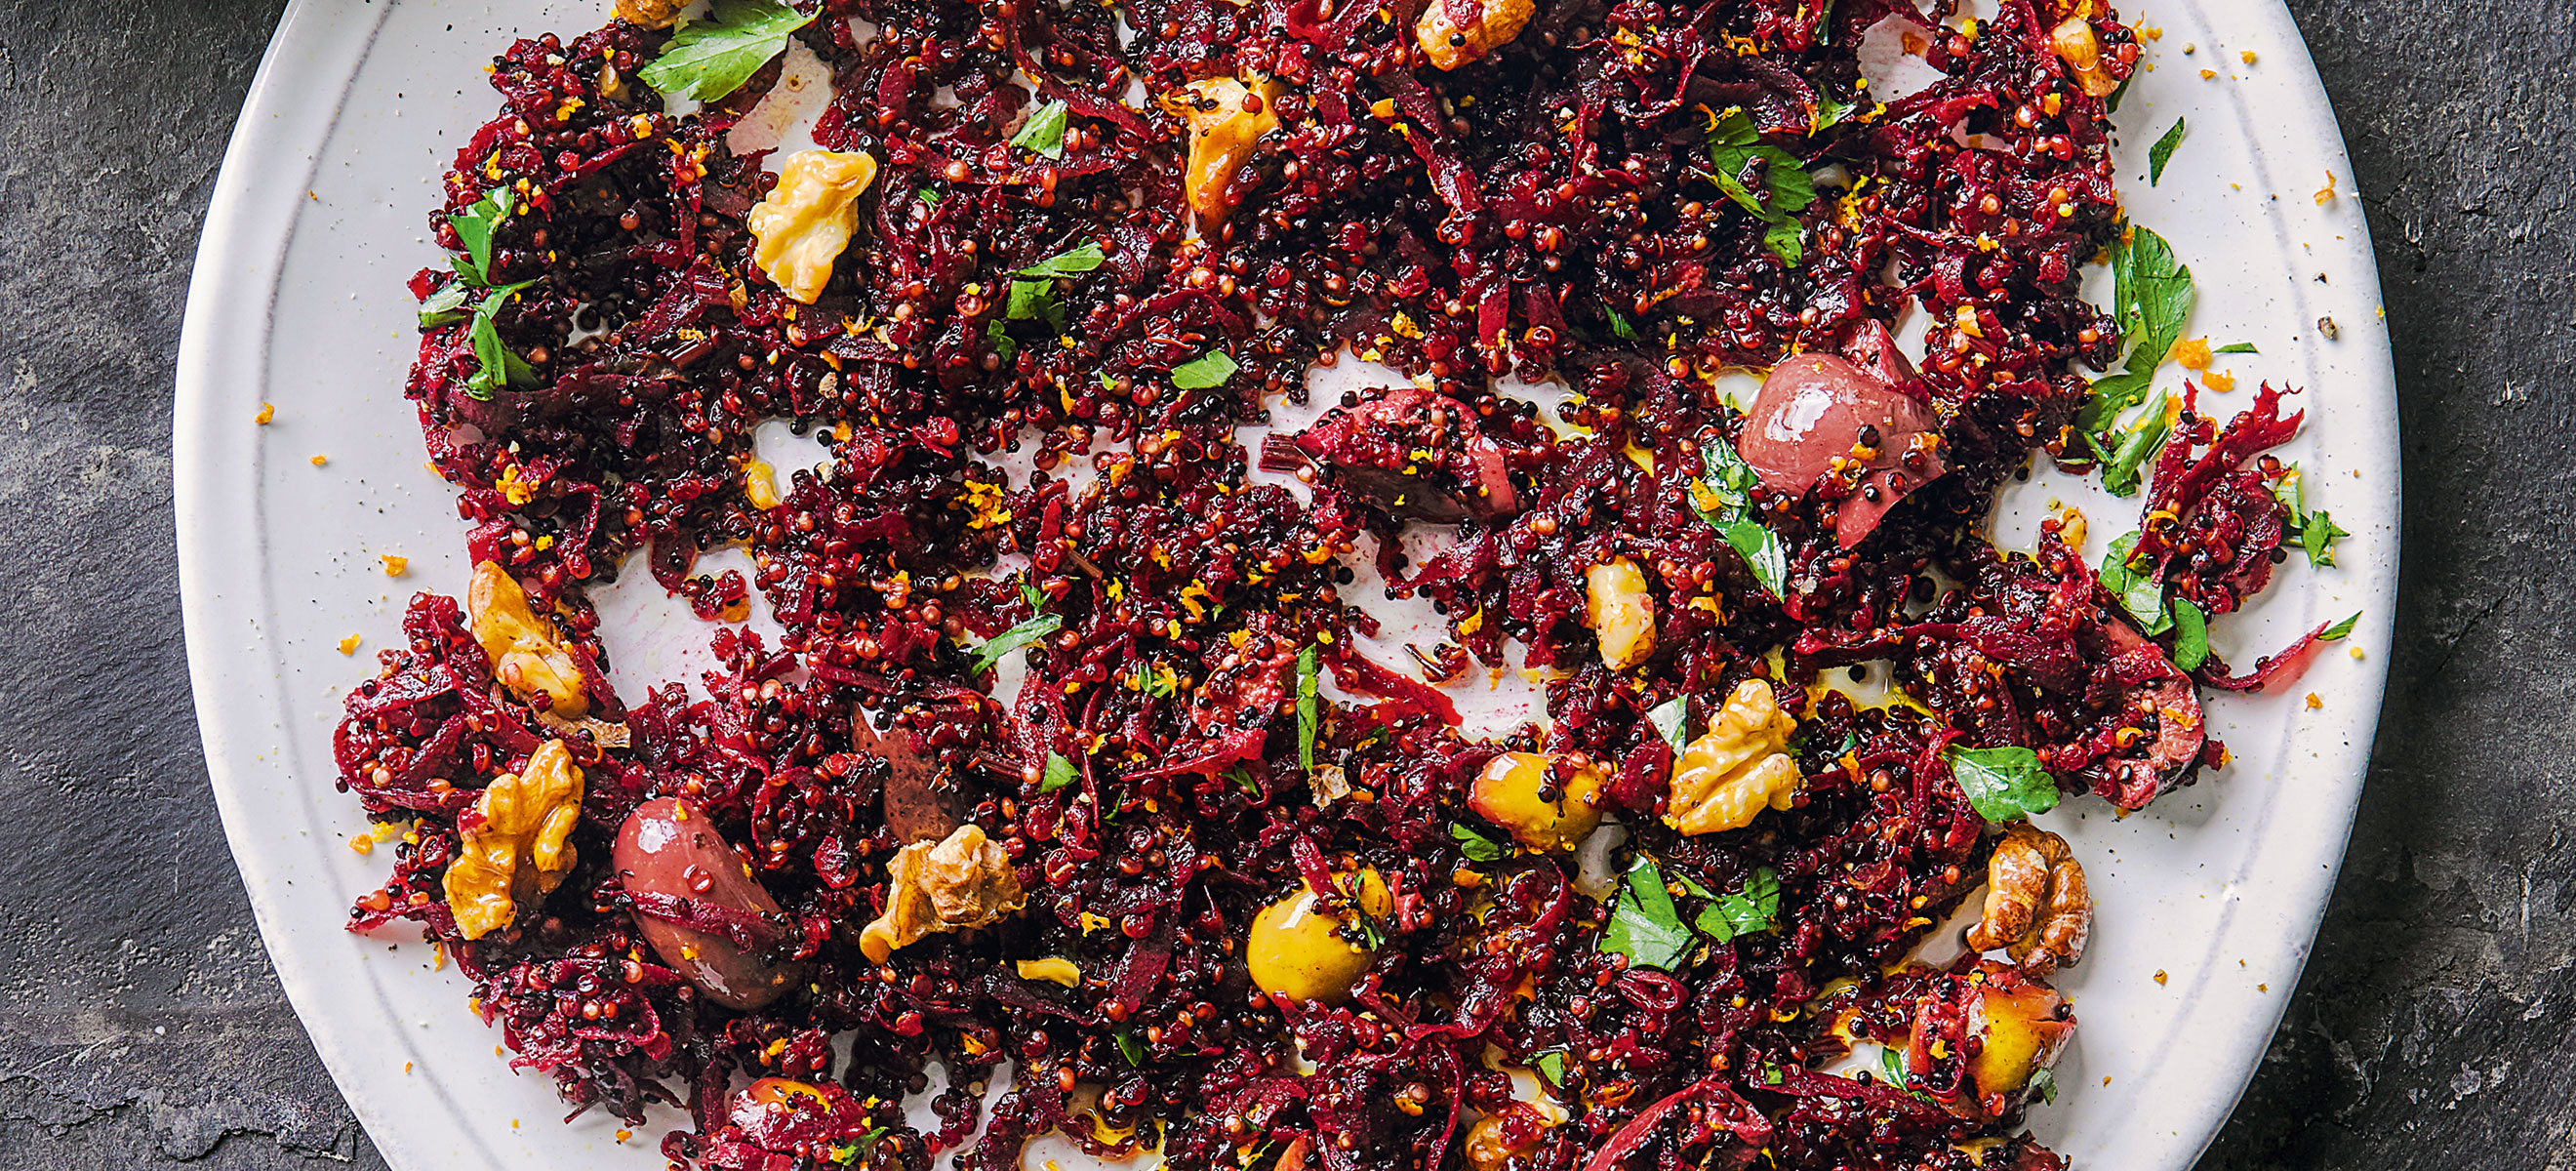 Geröstete Quinoa mit roter Rübe